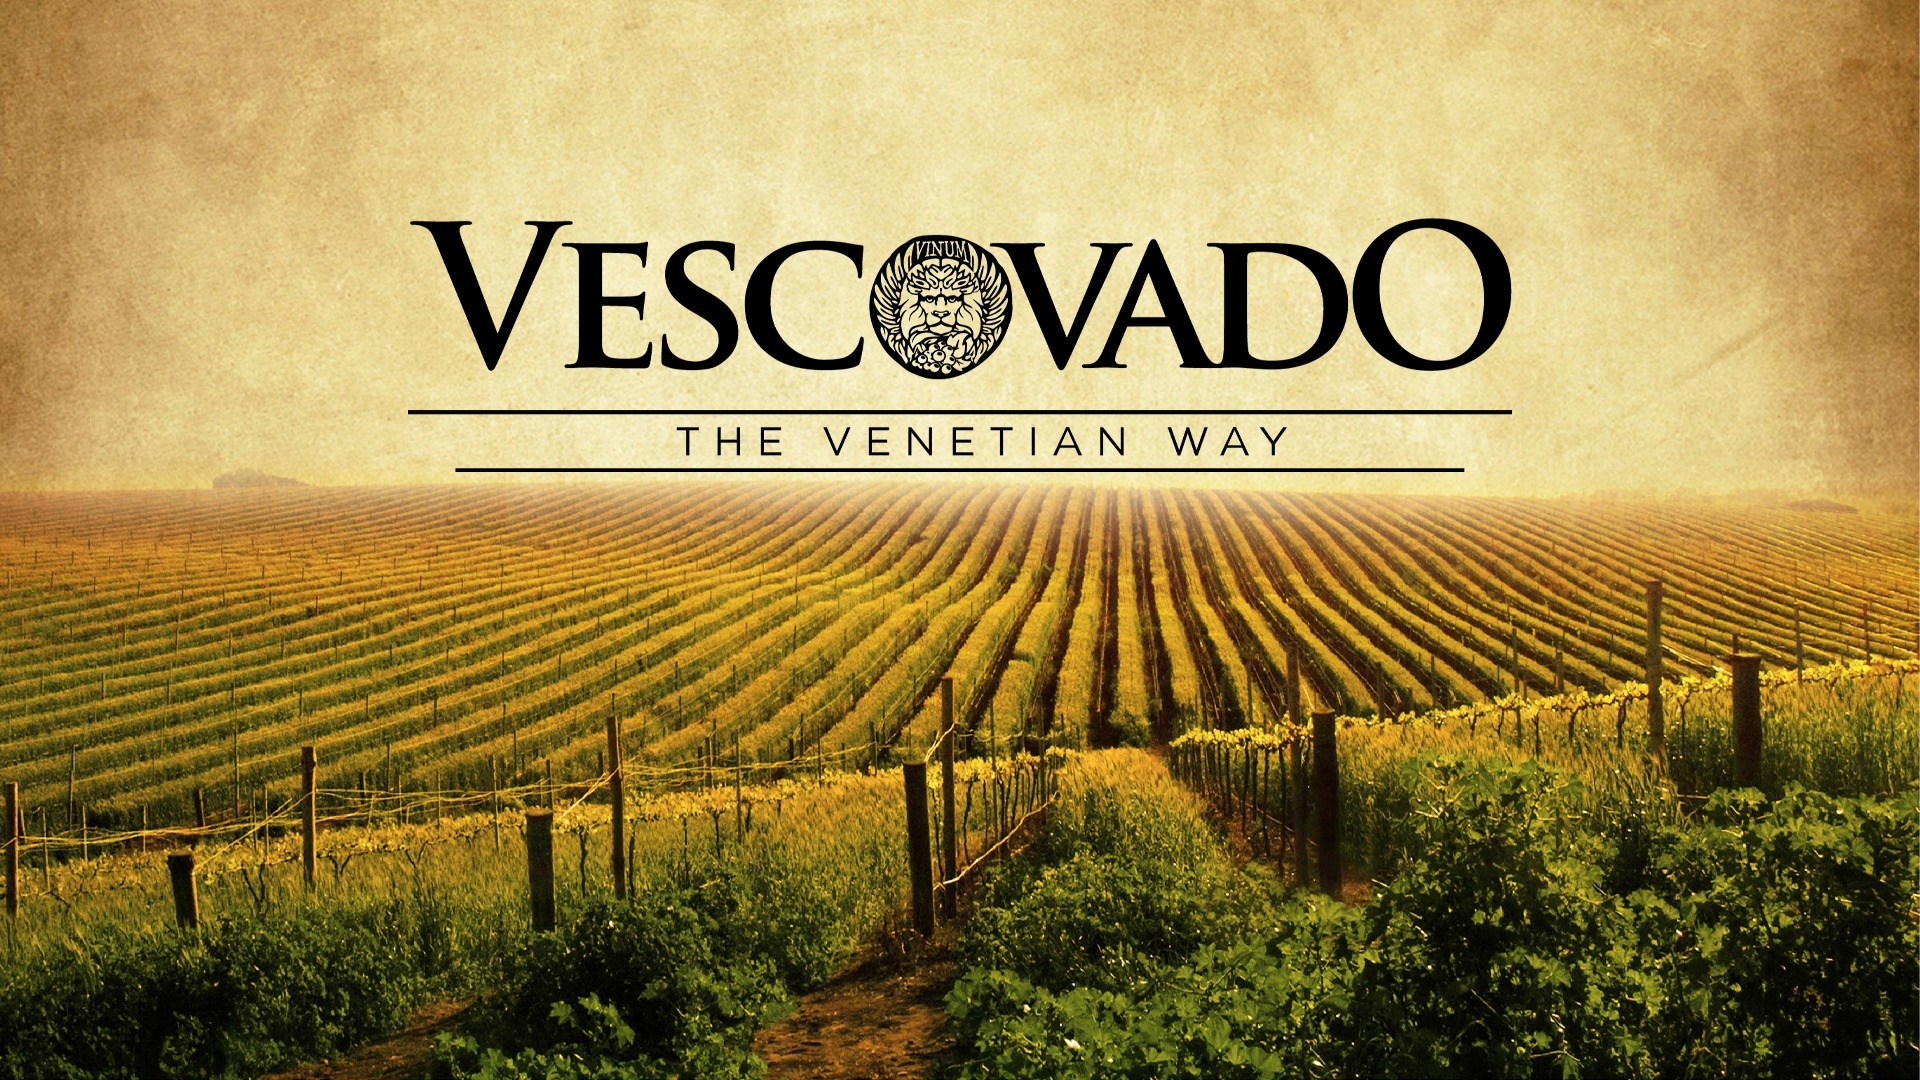 Caso studio Vescovado Wine - corporate identity per una cantina in Bulgaria